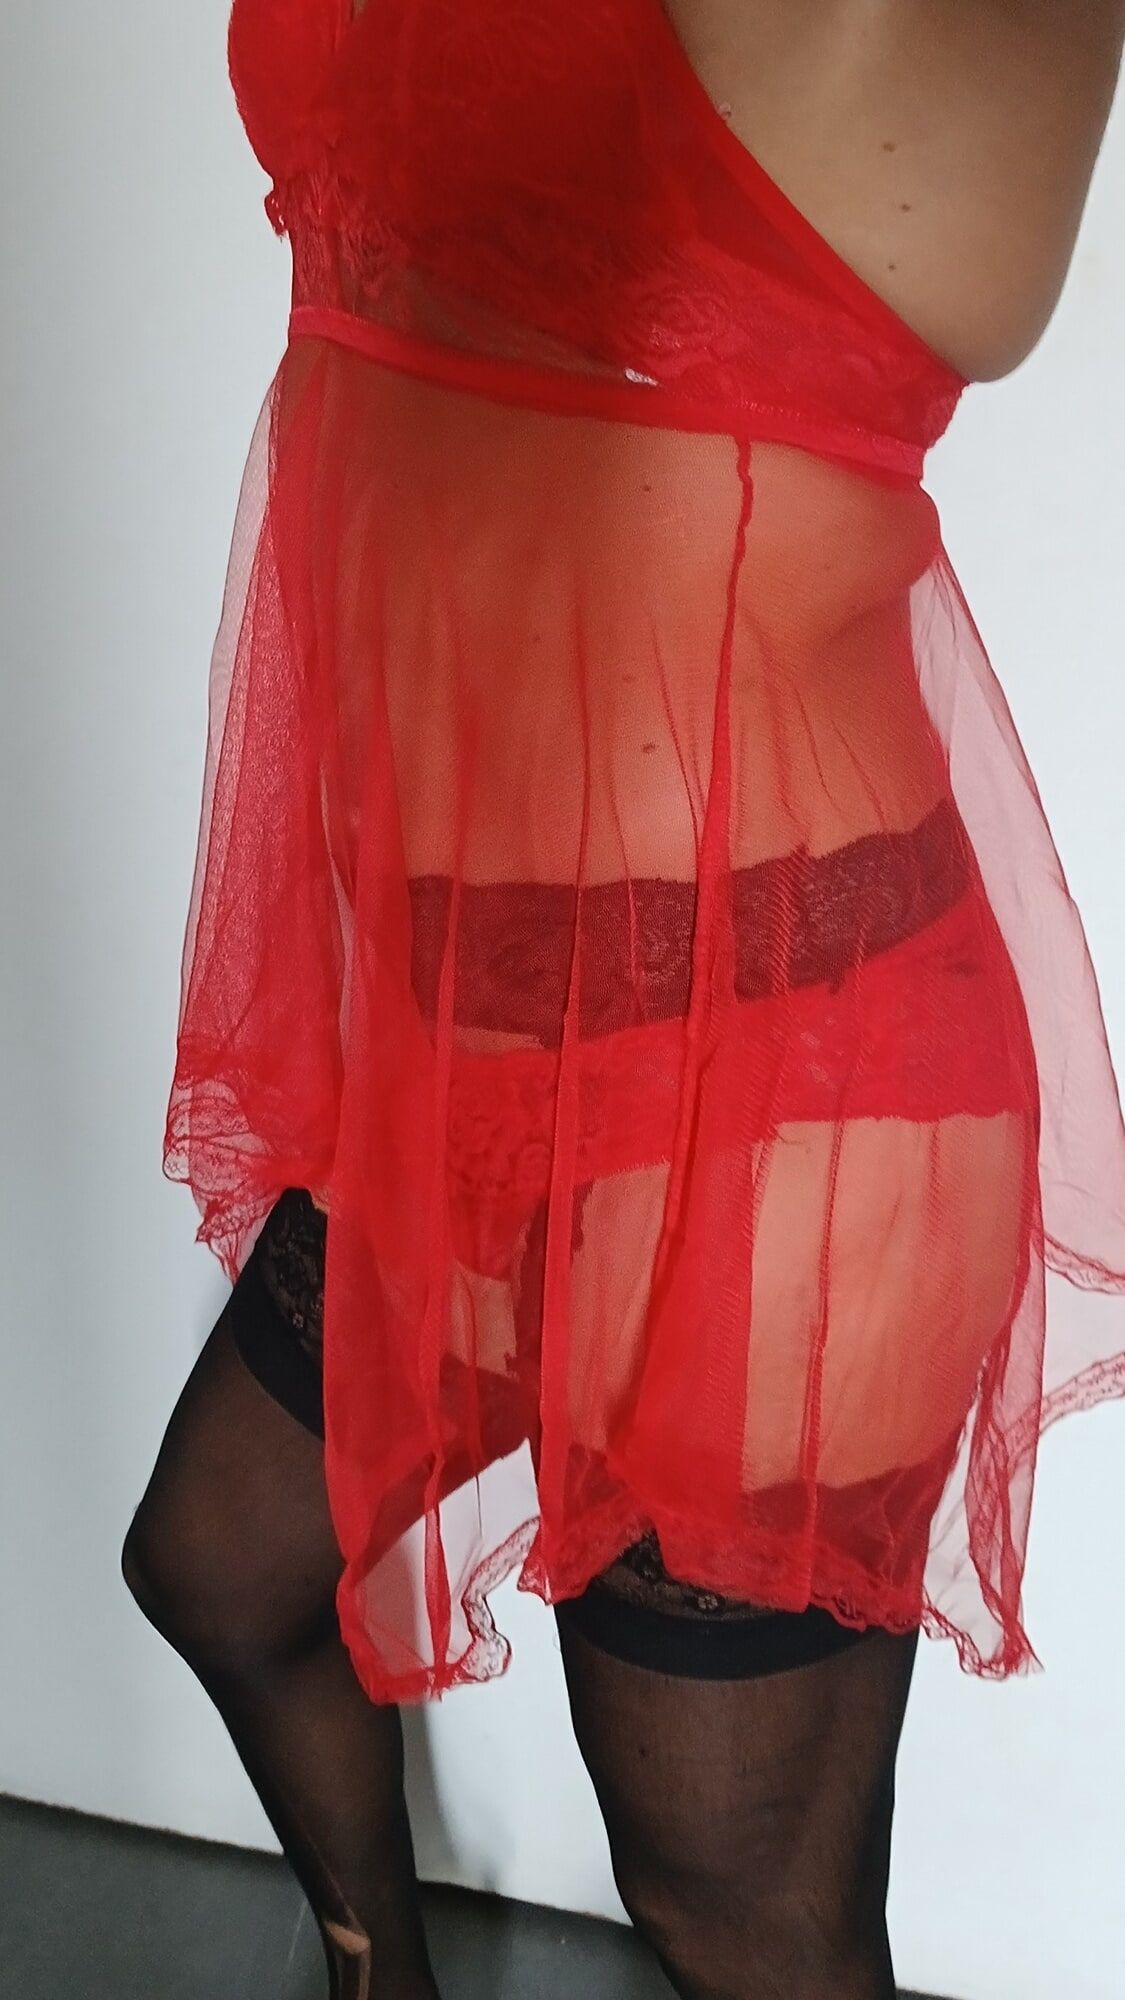 Red nightie black stoking high heels  #5